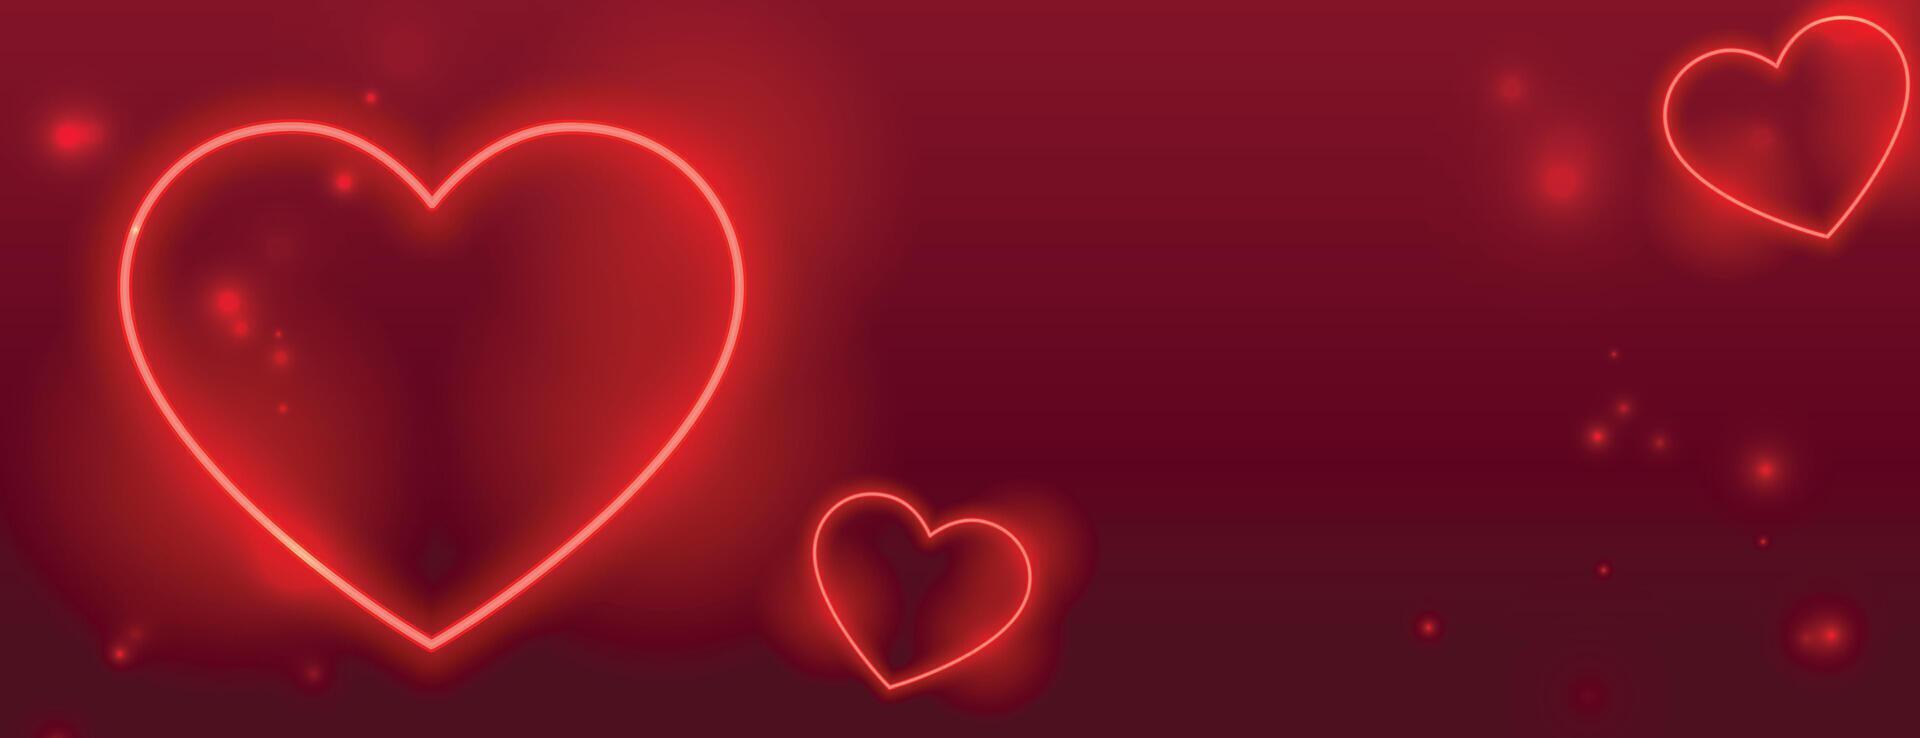 neón rojo corazones san valentin día romántico bandera diseño vector